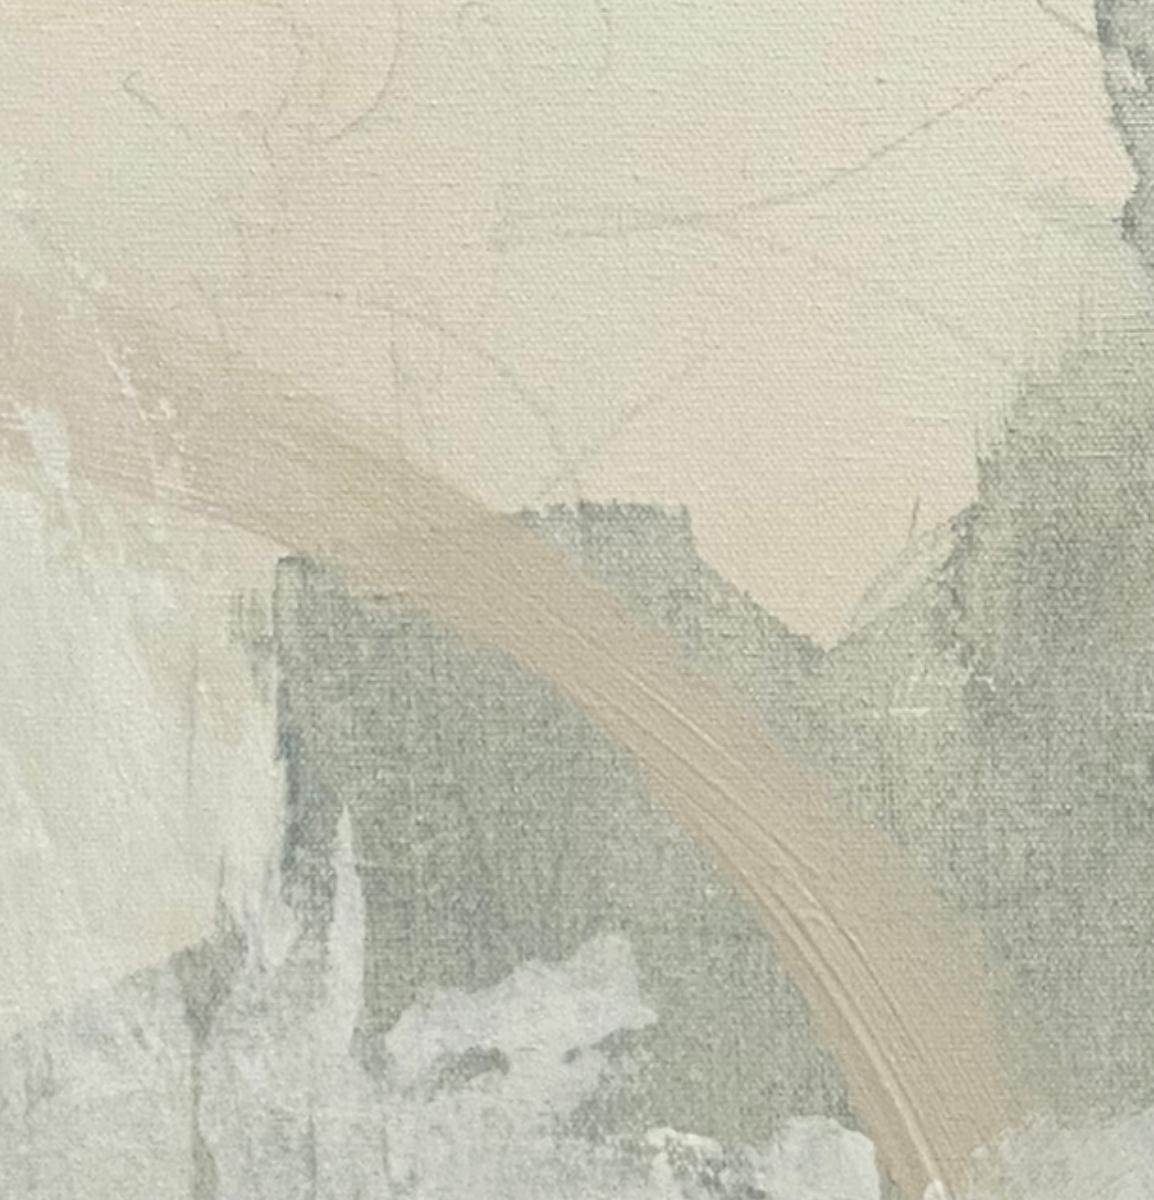 Articulado 7, abstracto contemporáneo, verde mar, tostado, blanco 24x24 pulgadas - Painting Expresionismo abstracto de Juanita Bellavance 